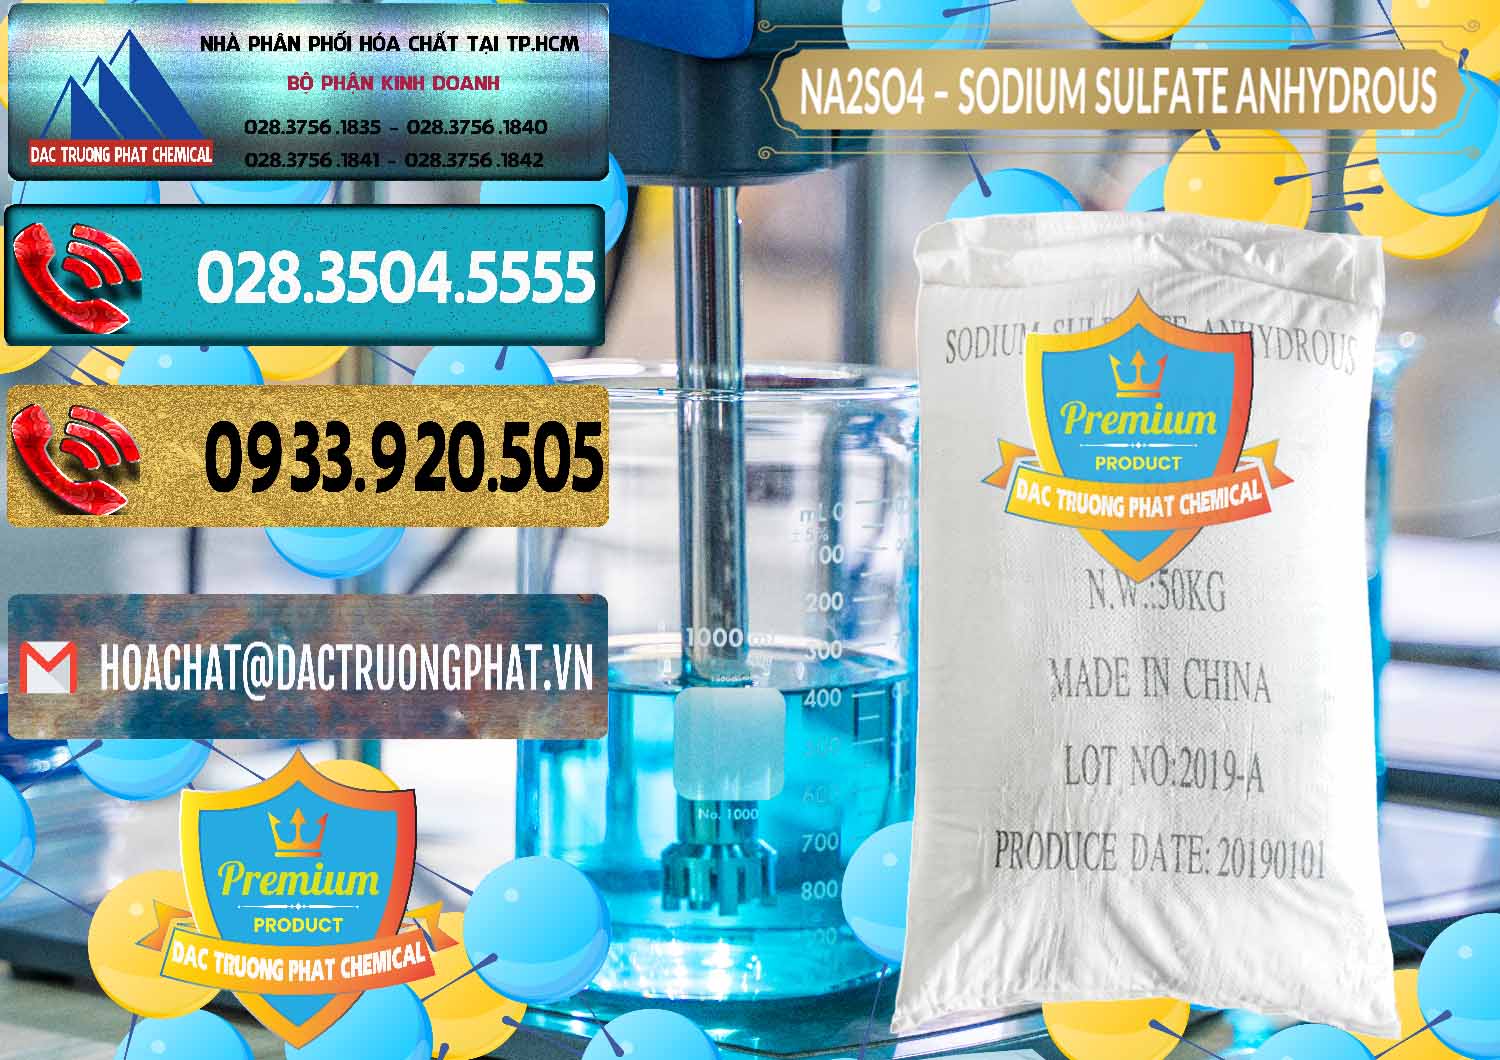 Cty bán và cung ứng Sodium Sulphate - Muối Sunfat Na2SO4 PH 6-8 Trung Quốc China - 0099 - Công ty nhập khẩu & phân phối hóa chất tại TP.HCM - hoachatdetnhuom.com